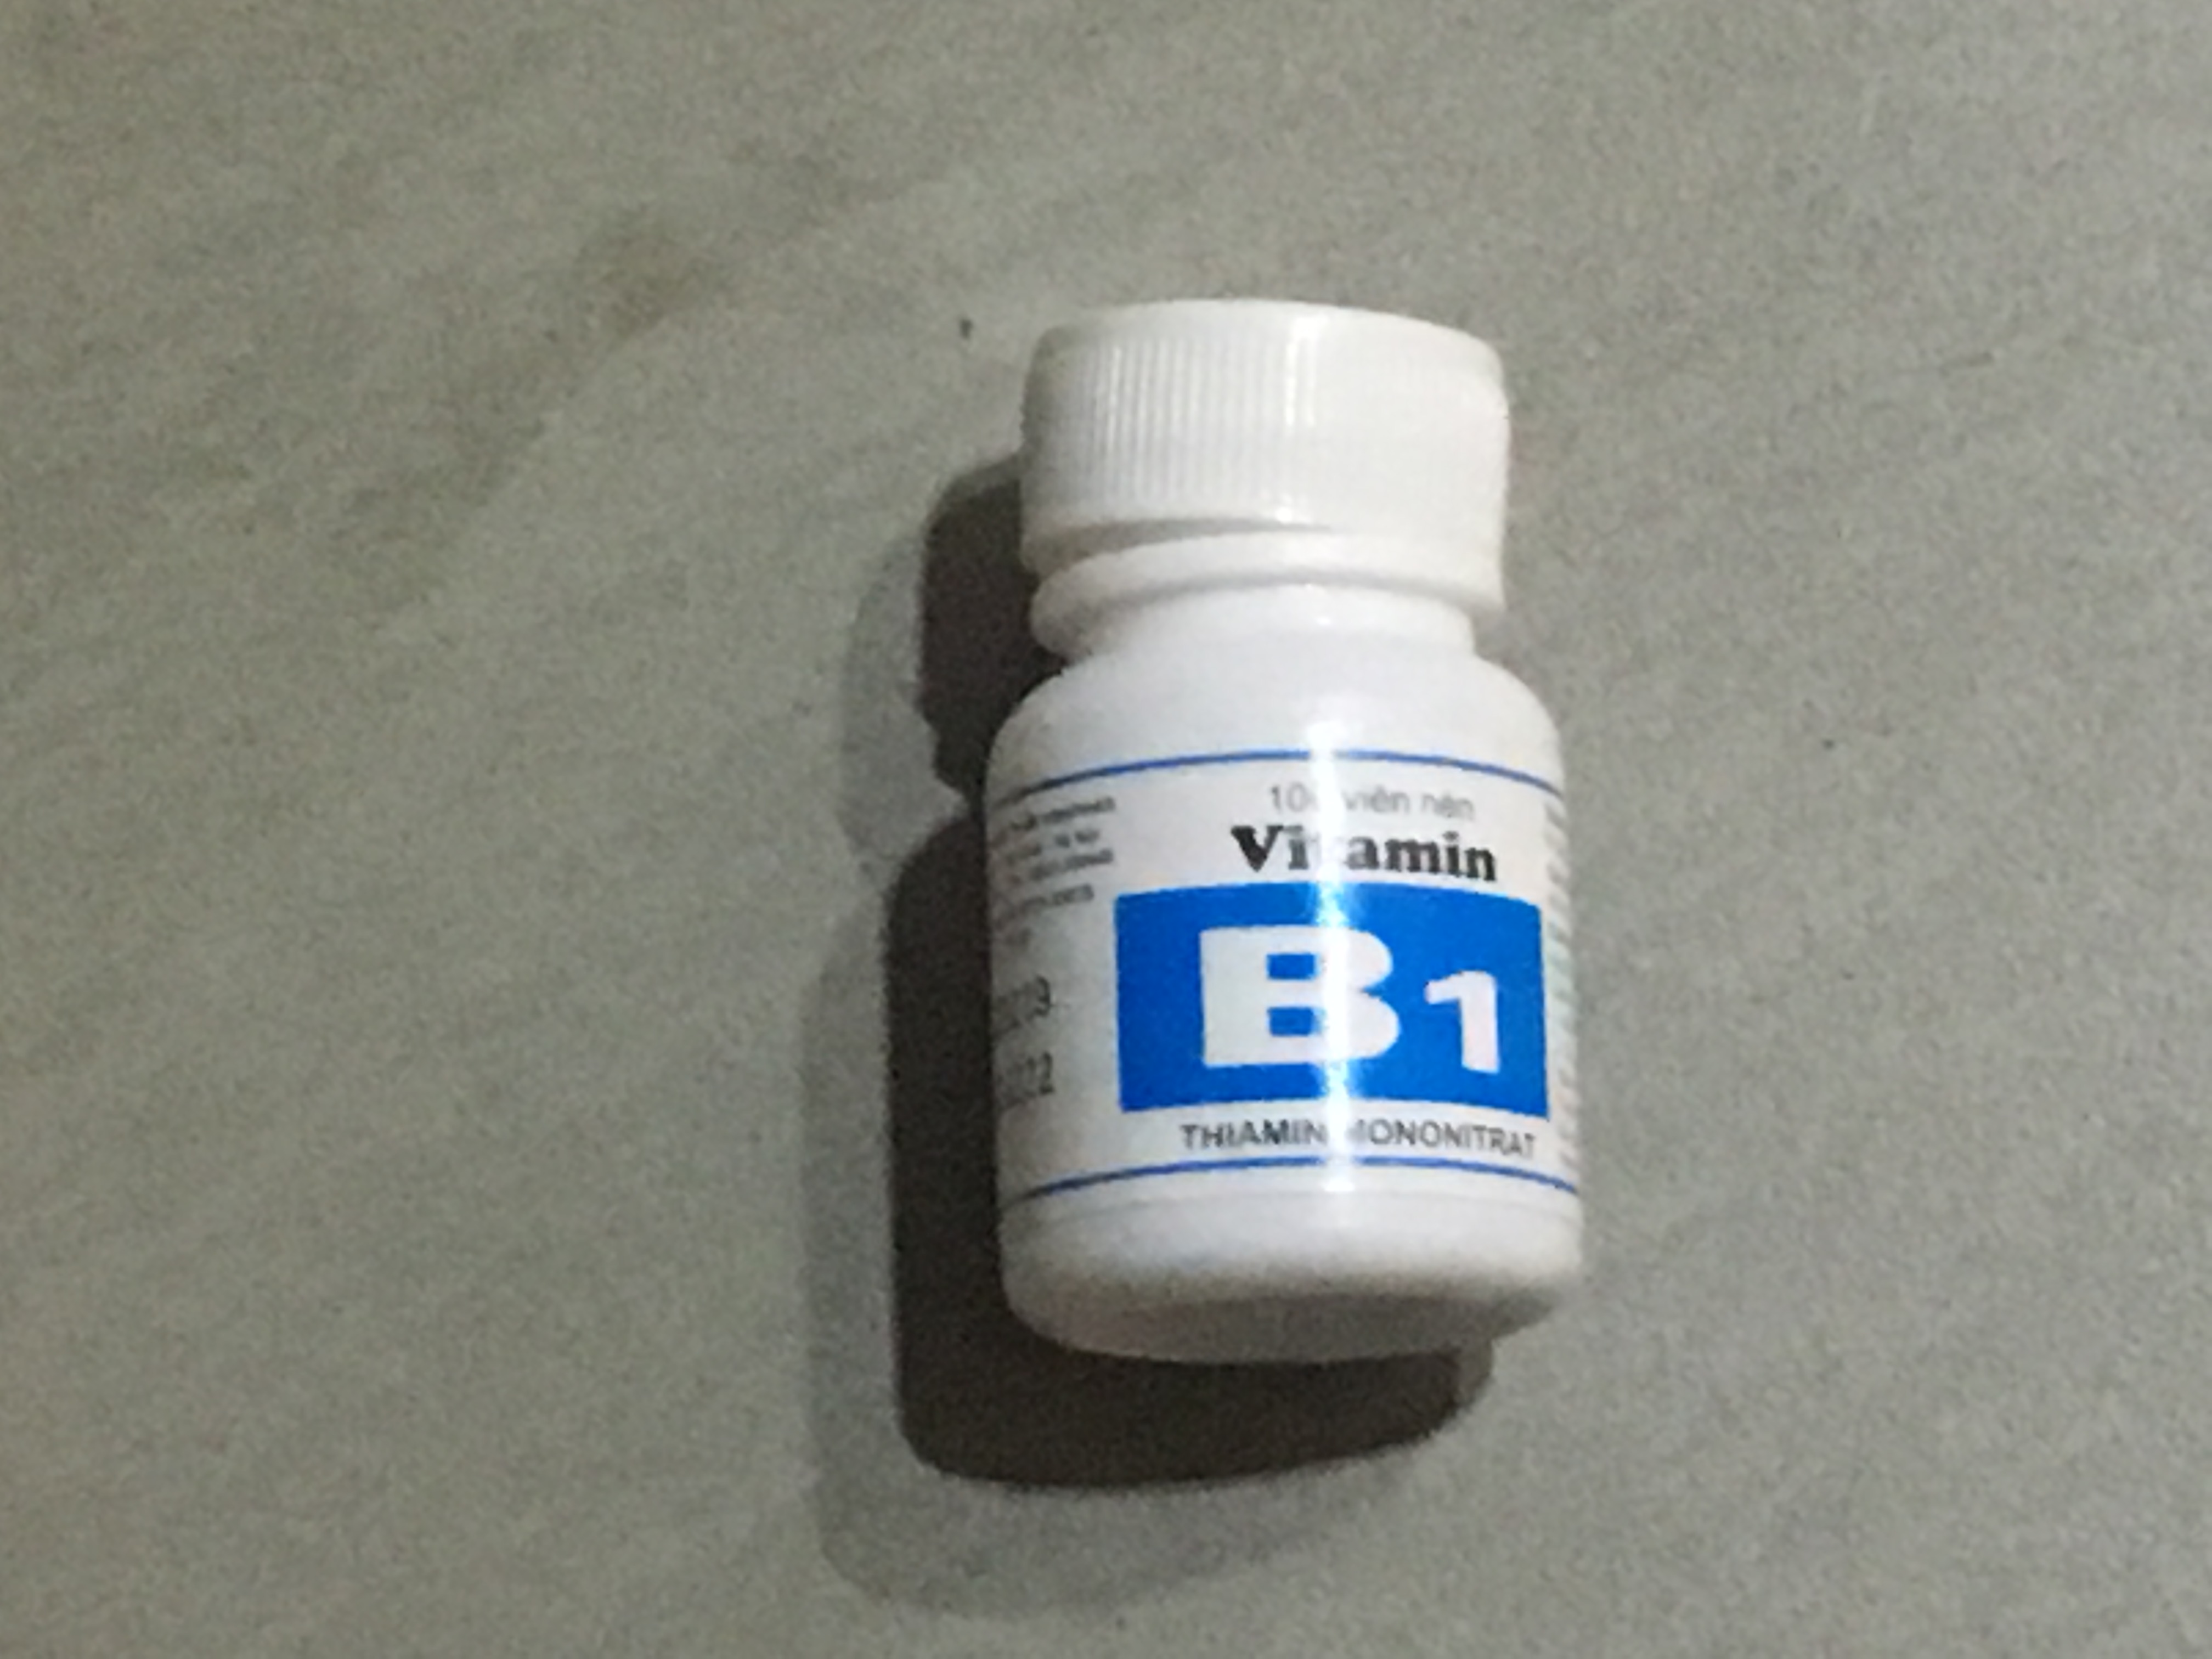 Loại Vitamin B1 của Vinaphar có tác dụng chính là gì và có giúp cải thiện tình trạng thiếu hụt vitamin B1 không?